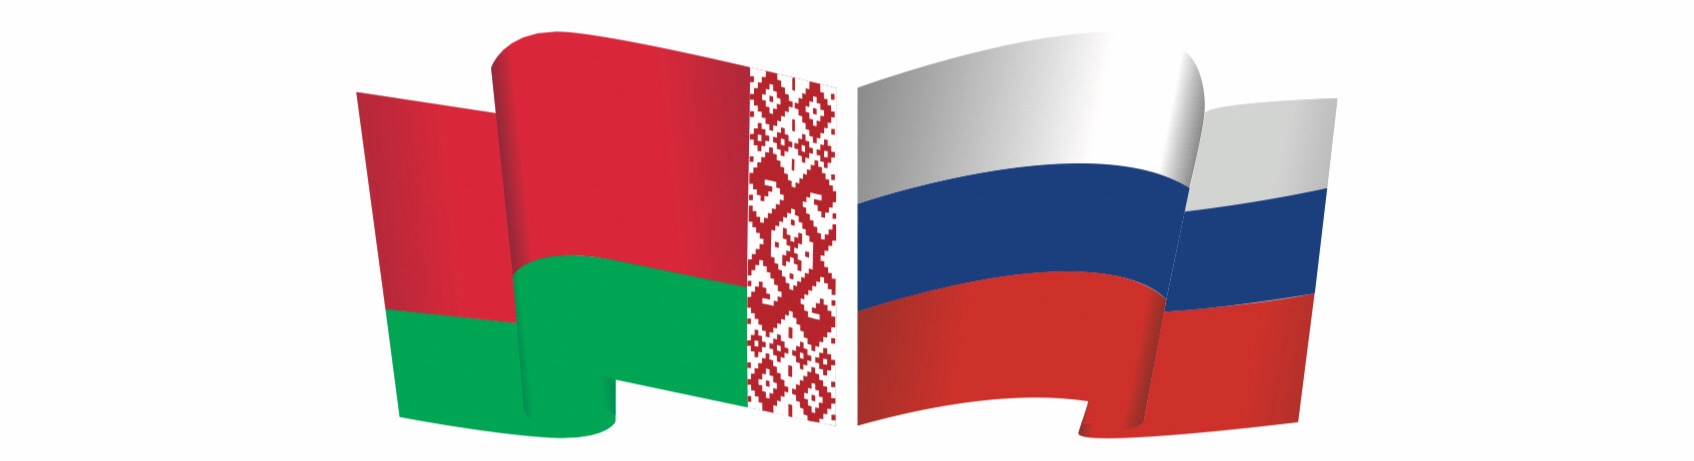 Соглашение между МГУ и БГУ о совместной магистерской программе "История белорусской диаспоры"